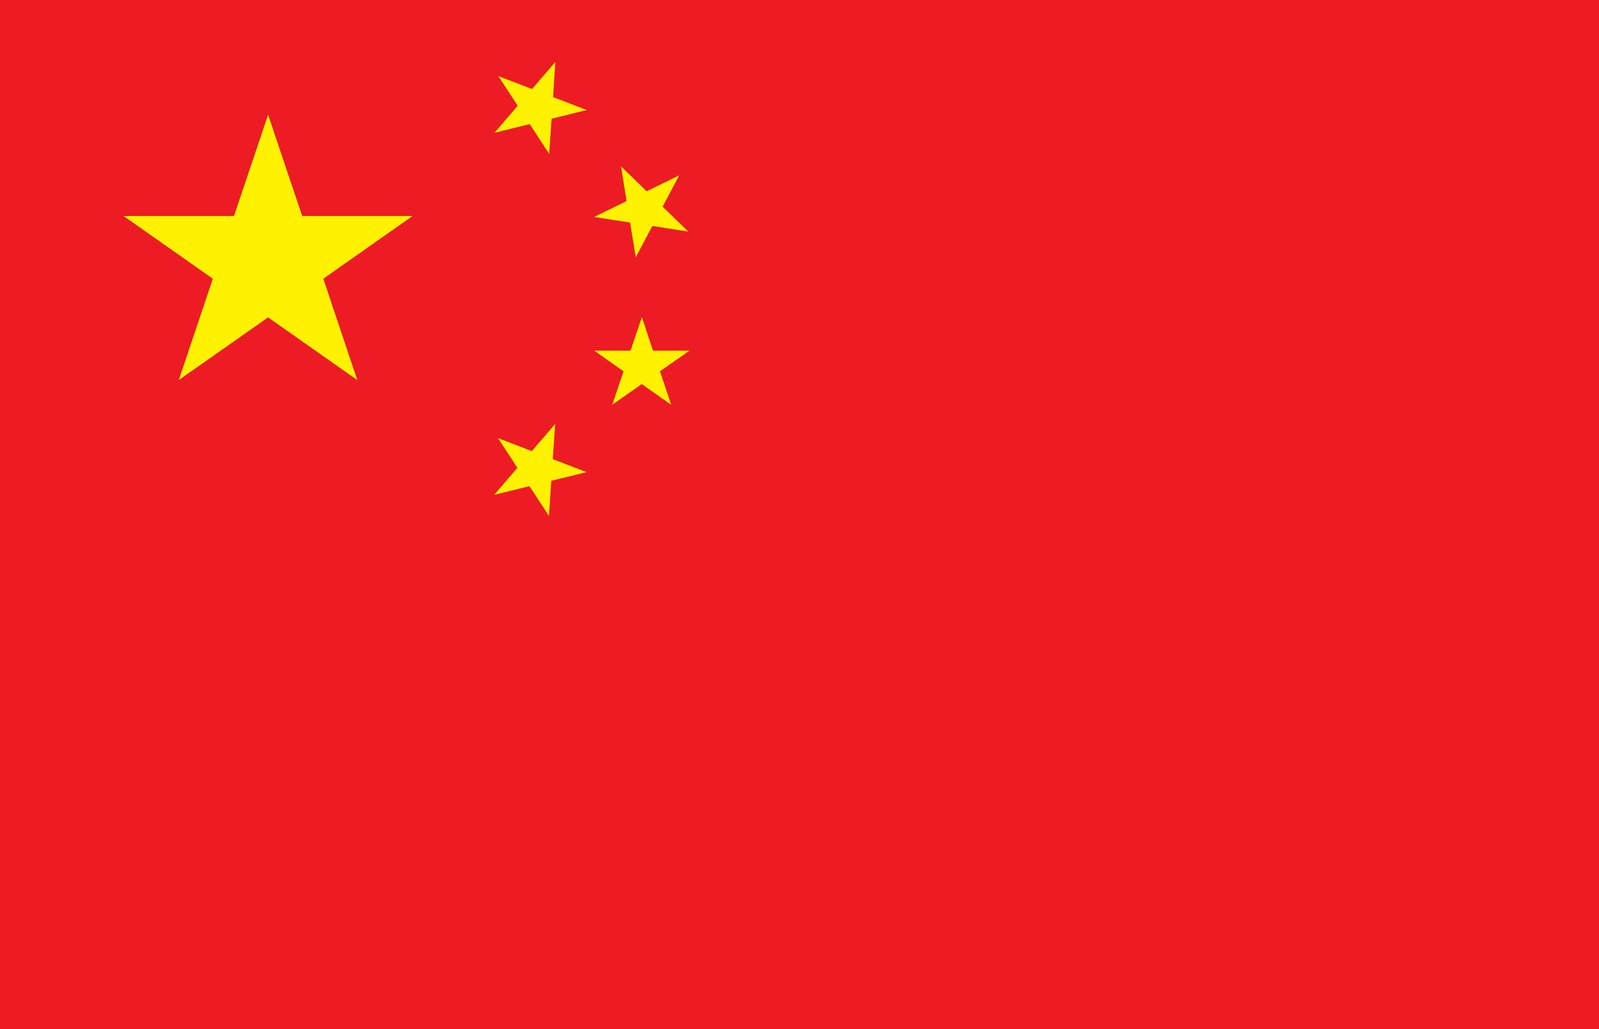 Cờ Trung Quốc Tải xuống ảnh miễn phí | Hình ảnh miễn phí